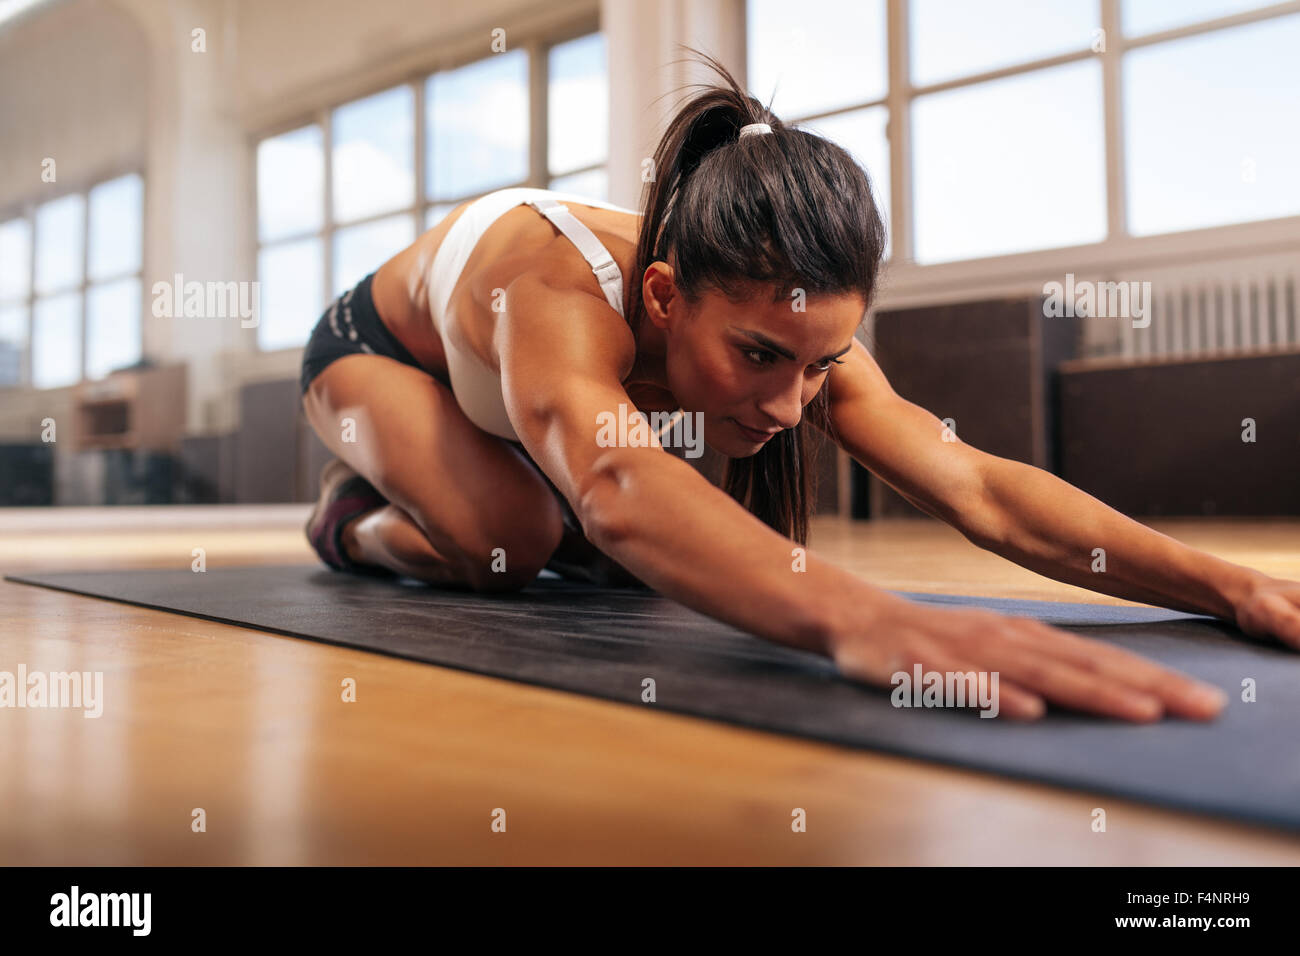 La jeune femme s'étendant d'entraînement sur tapis de fitness. Yoga au féminin de sport. Banque D'Images